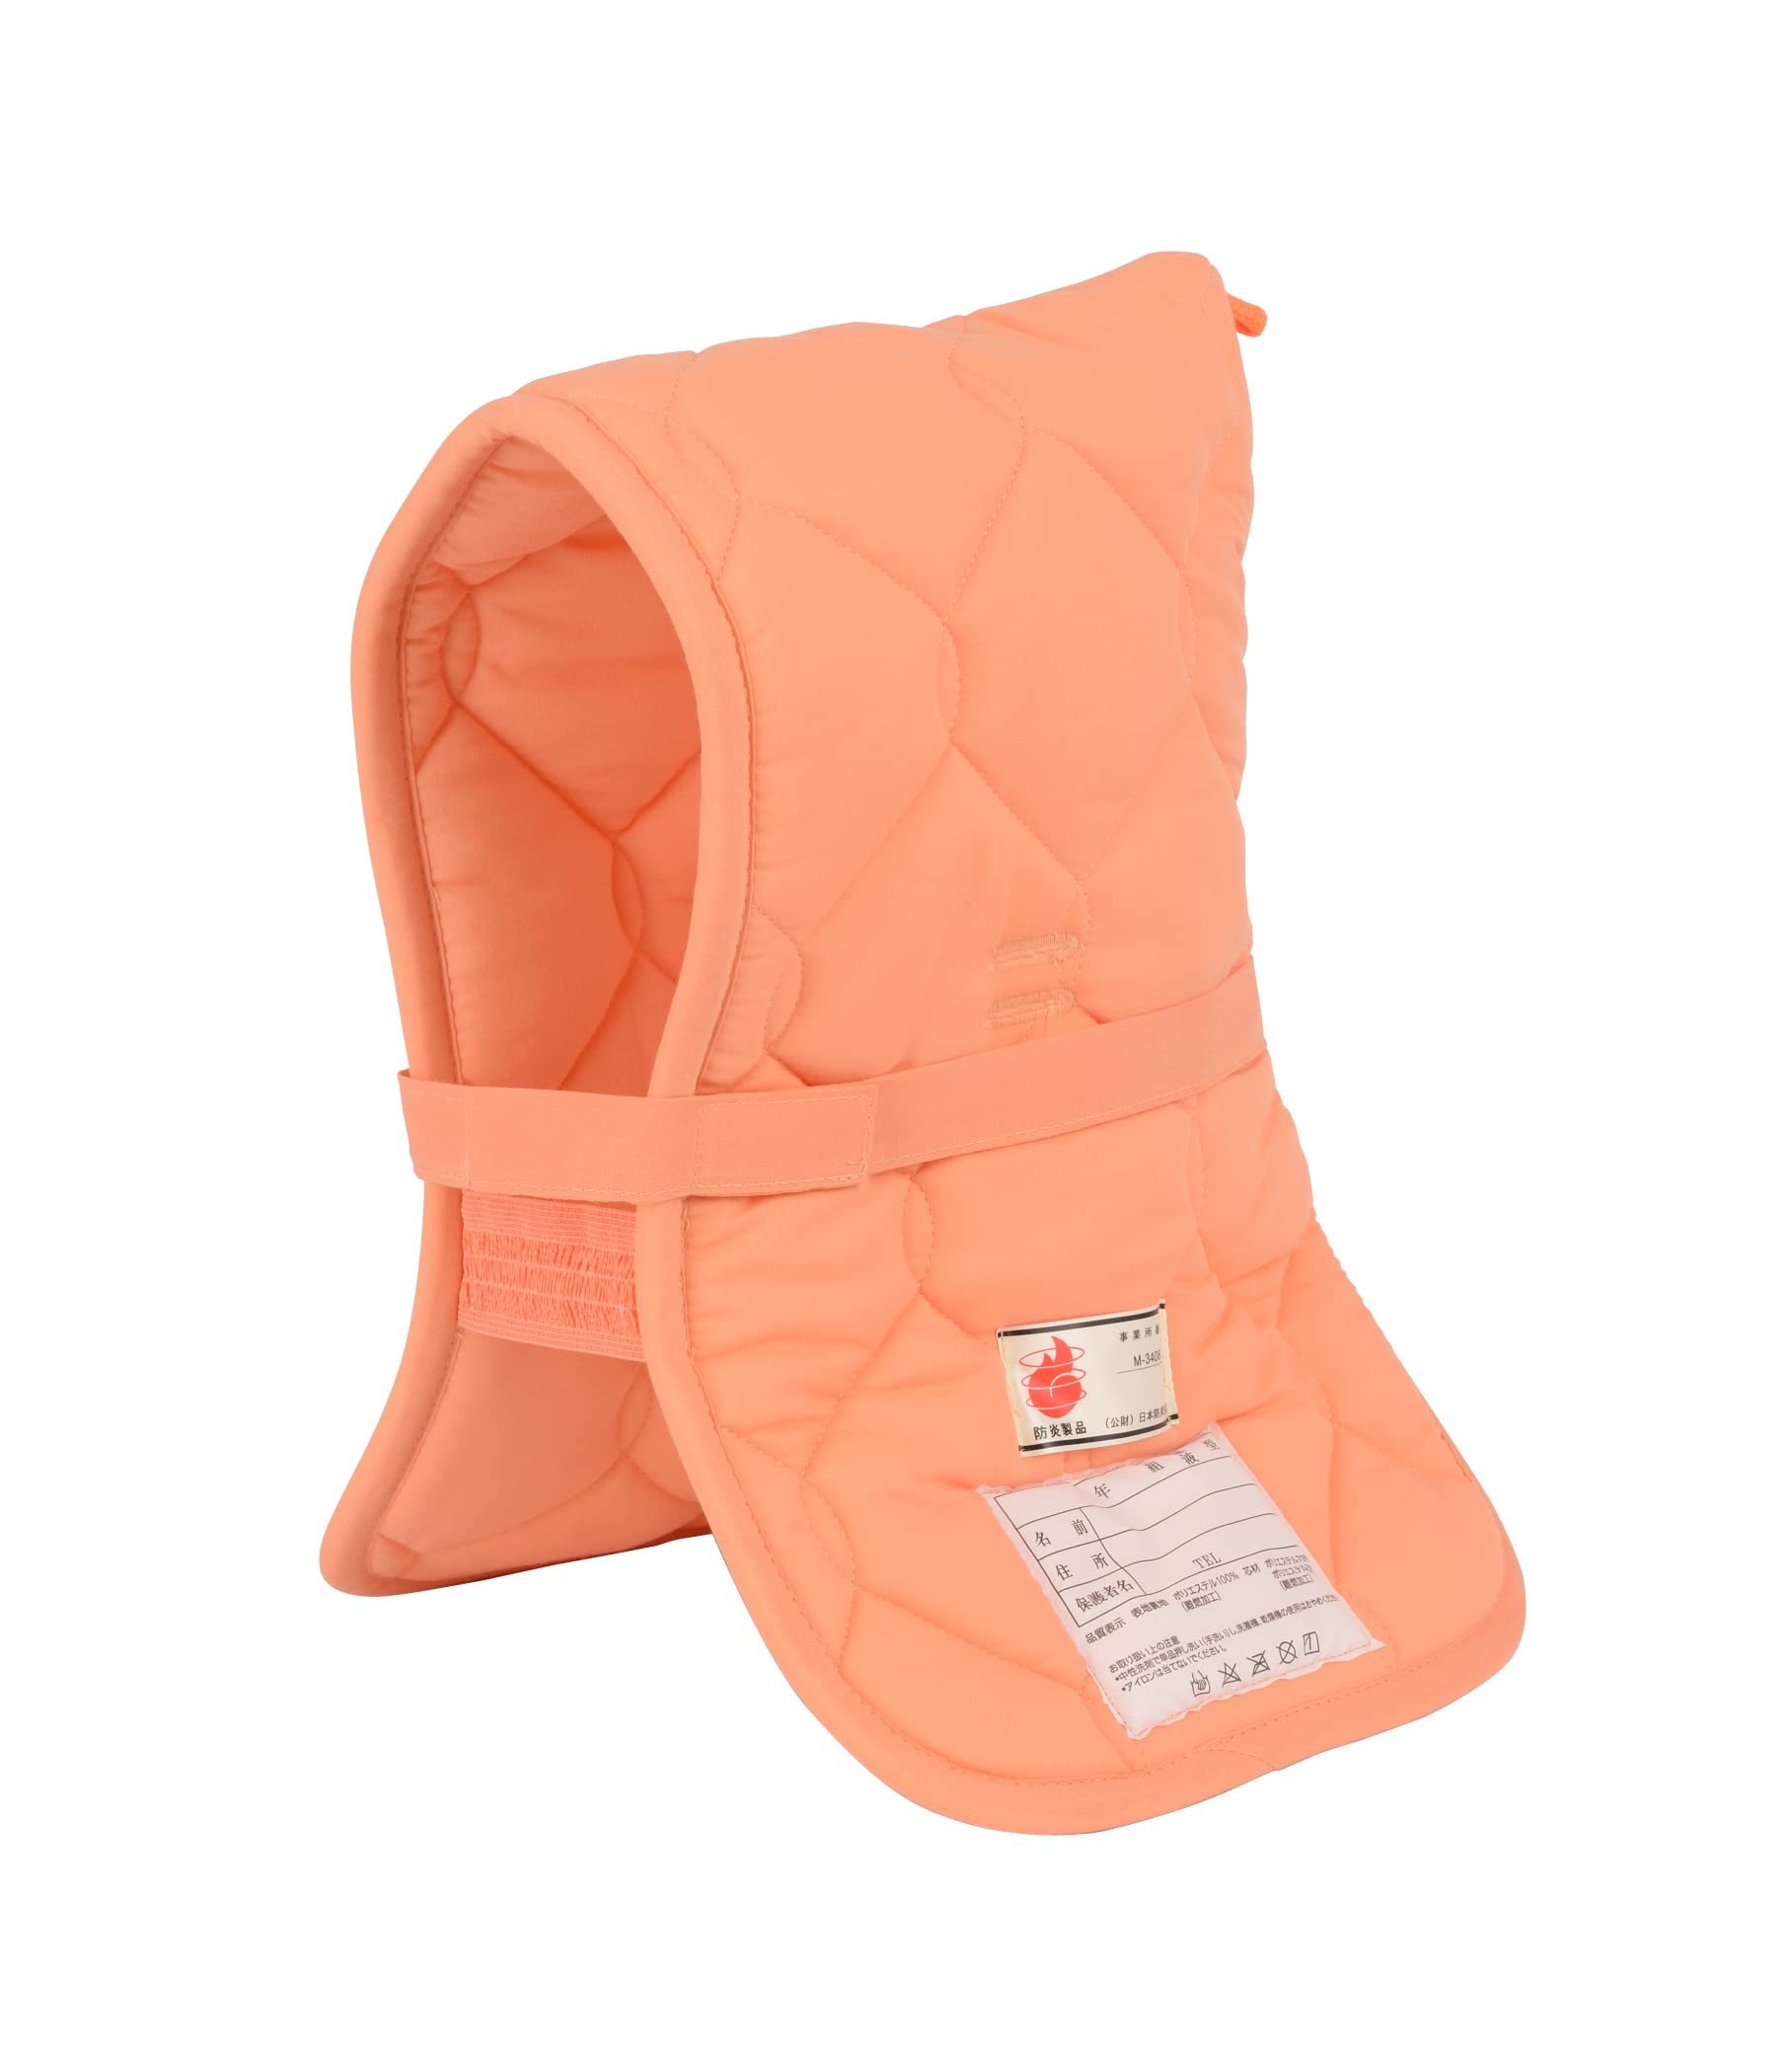 日本防炎協会認定品 防災頭巾 DKタイプ小オレンジ 小学校低学年以下 約38×27cm 90010